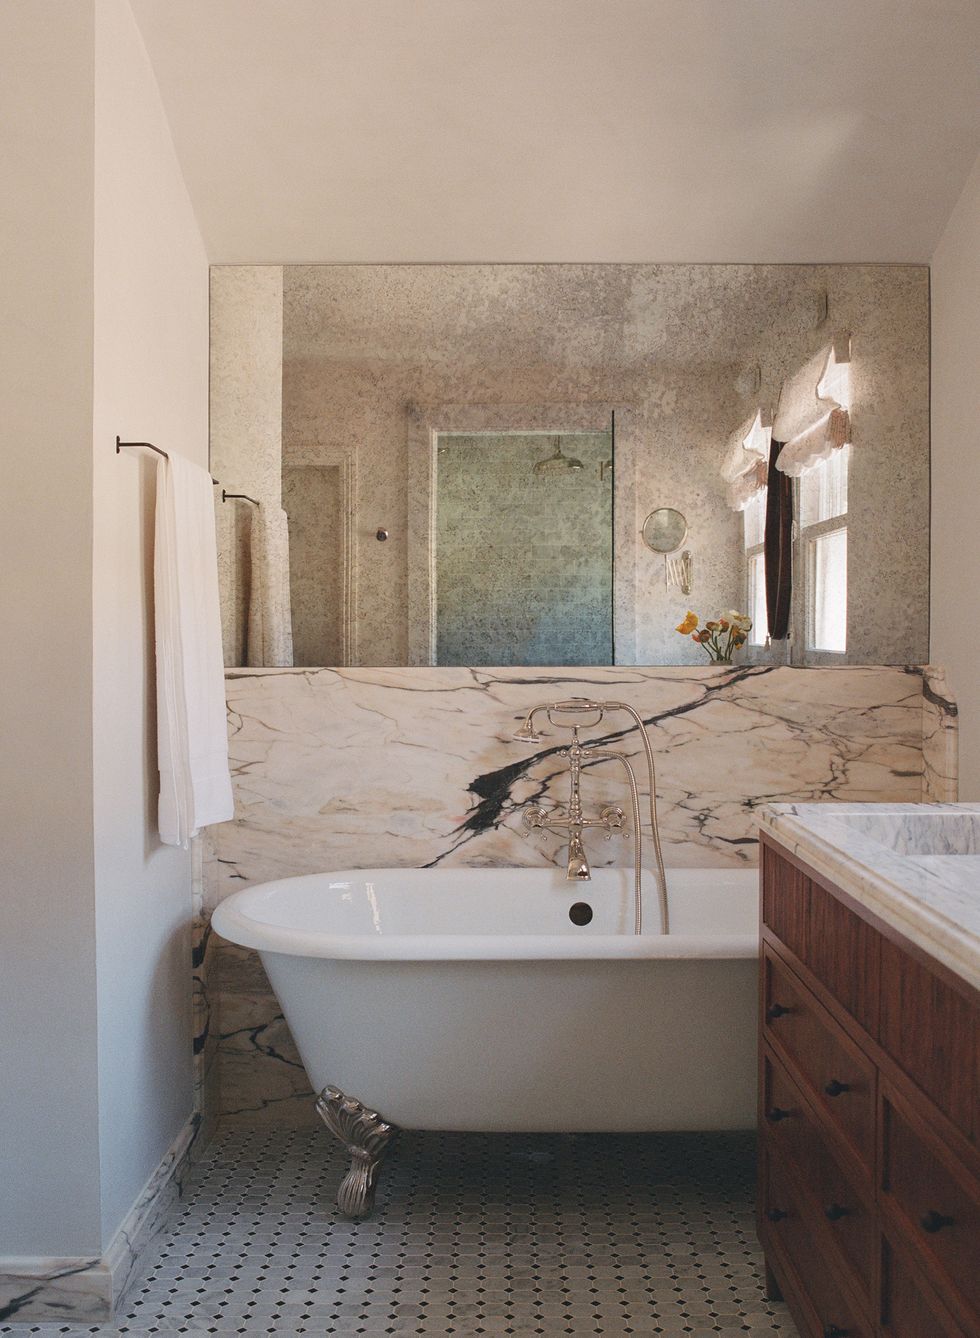 baño con bañera con patas y revestimiento de mármol en las paredes